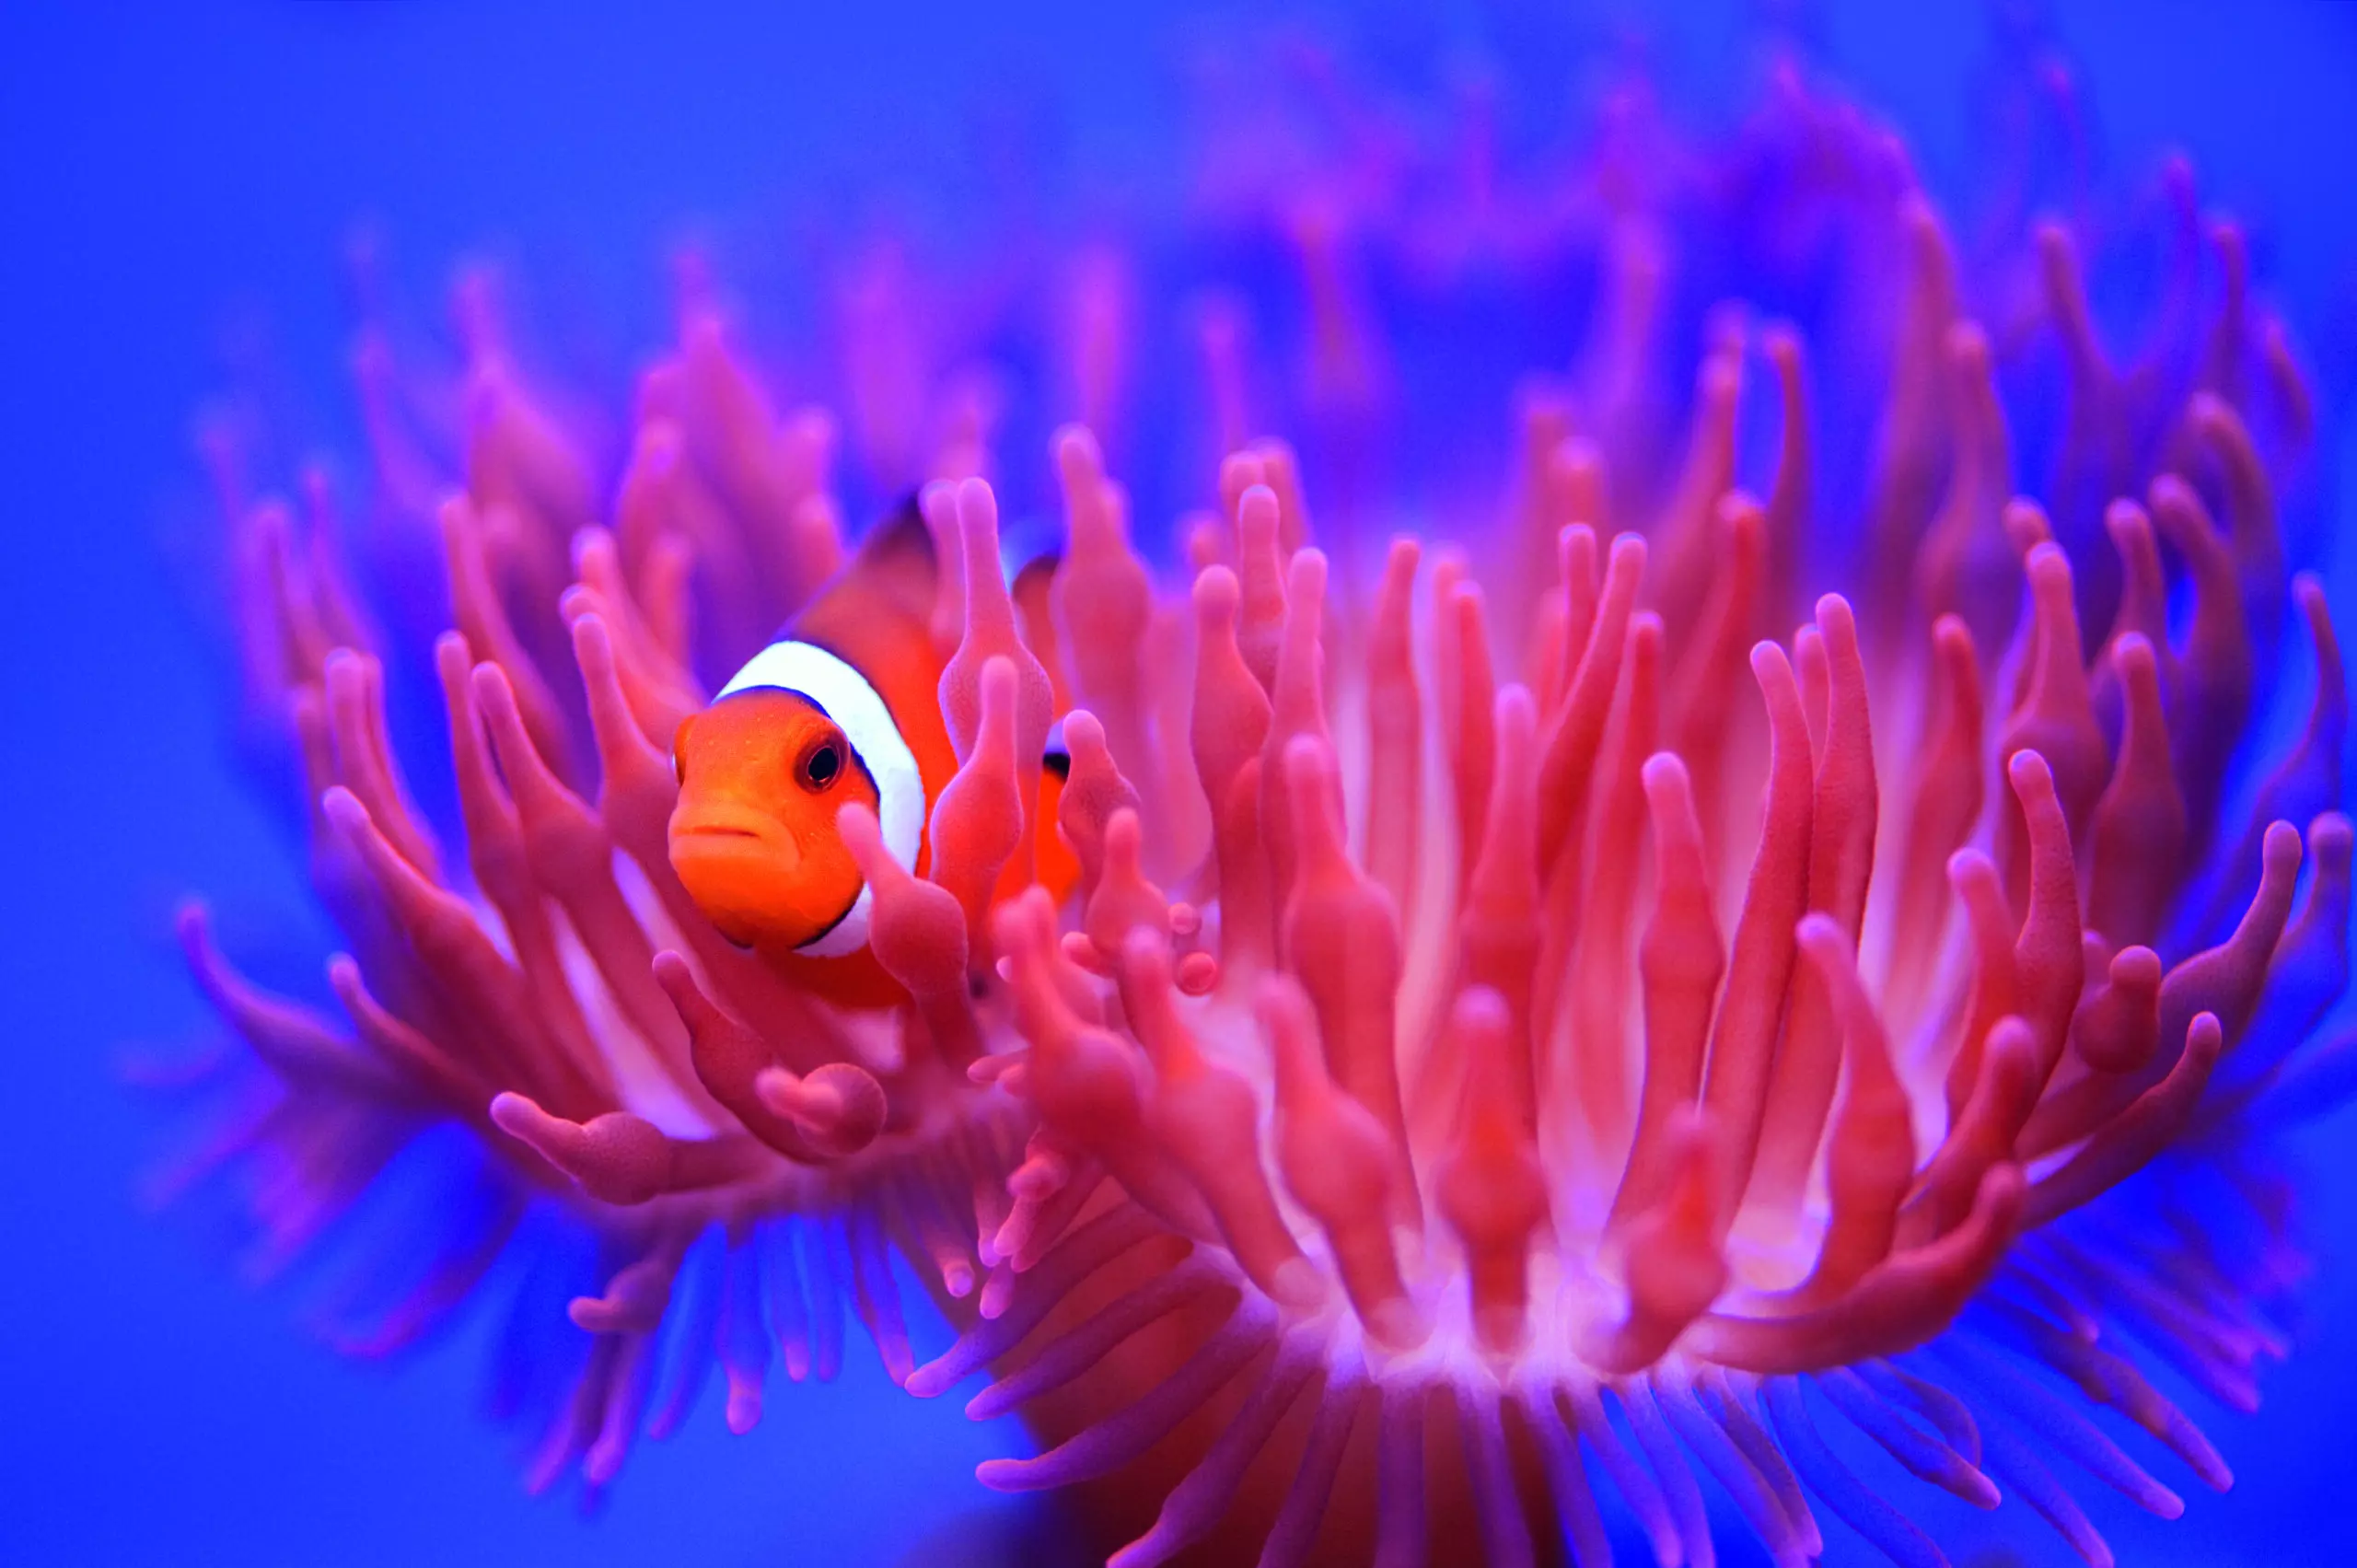 Wandbild (5260) Find Nemo by Wendy präsentiert: Details und Strukturen,Sonstige Naturdetails